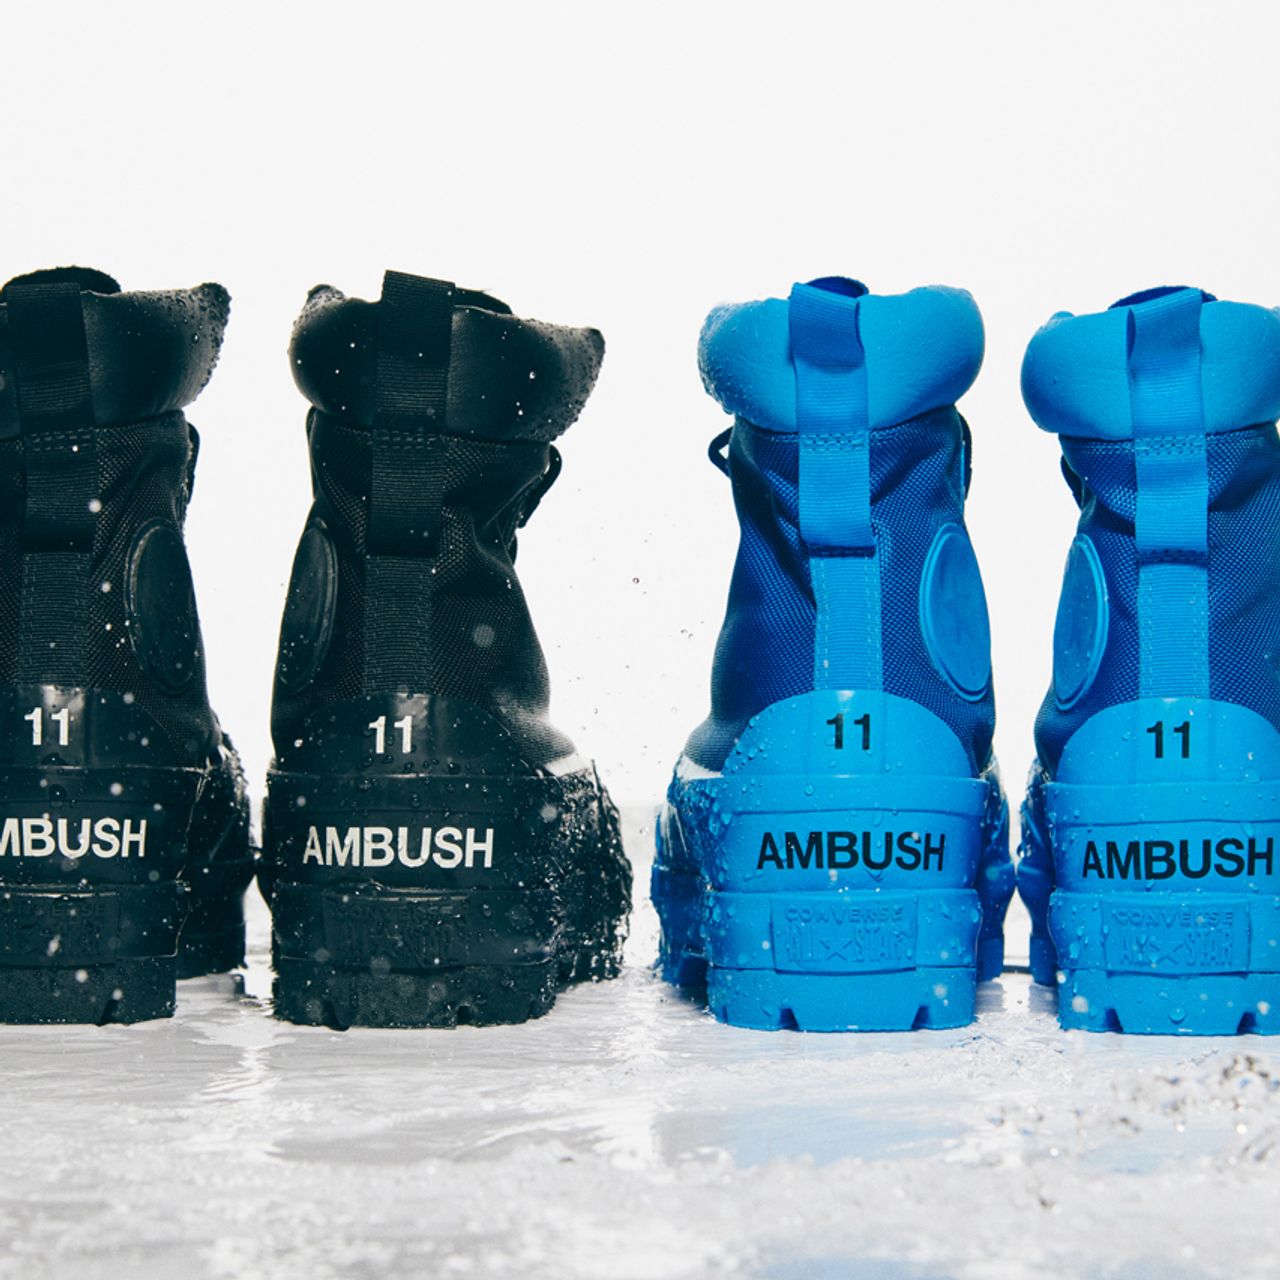 Release Details: The AMBUSH x Converse CTAS Duck Boots - Sneaker Freaker